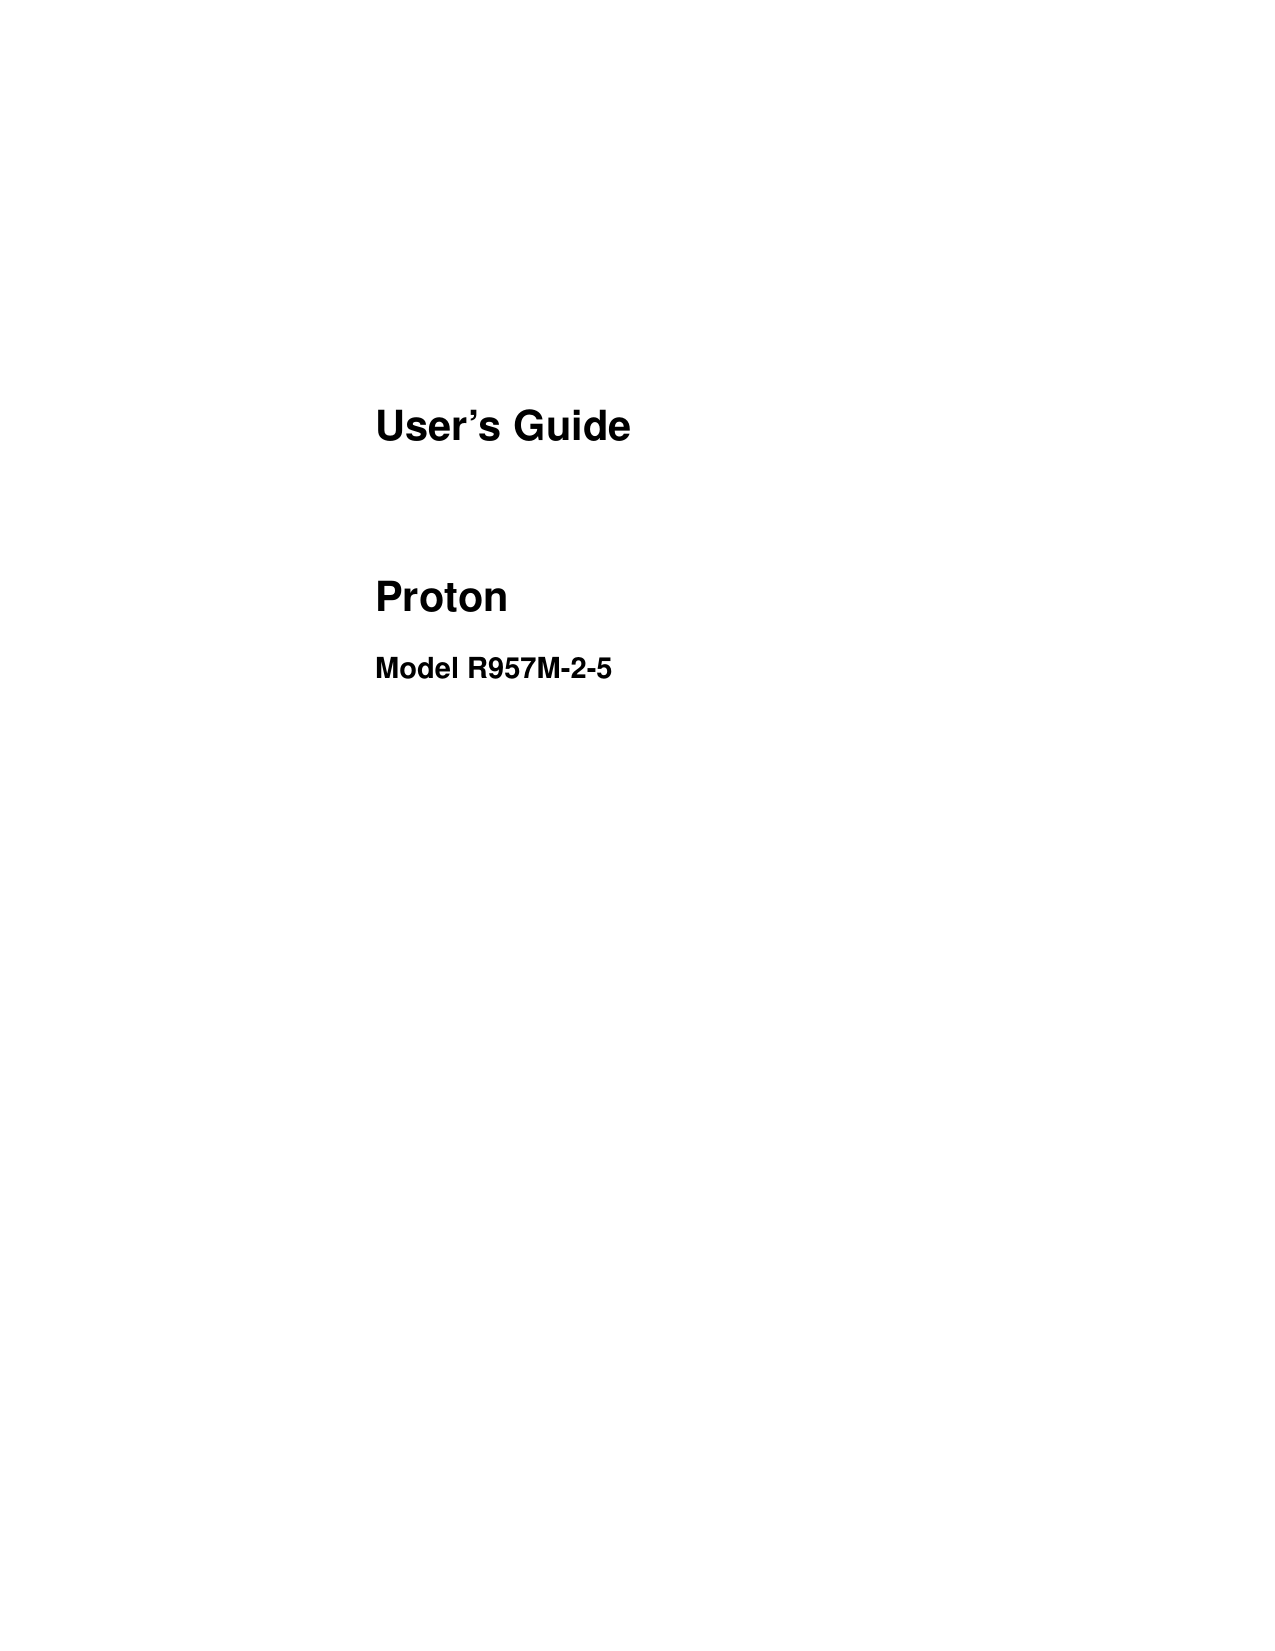 User’s GuideProtonModel R957M-2-5